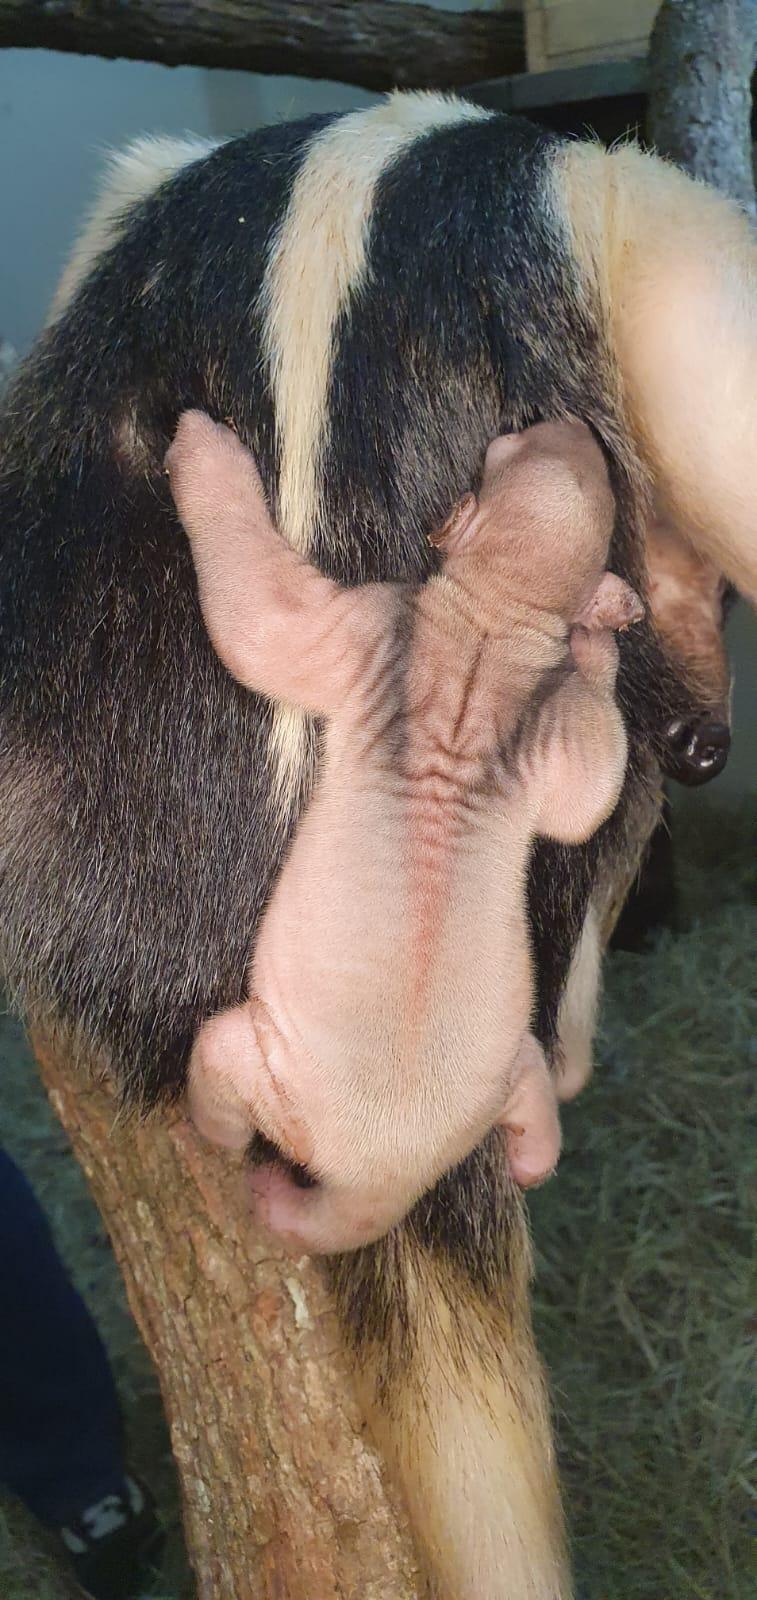 Zooparque Itatiba registra o primeiro nascimento de tamanduá-mirim